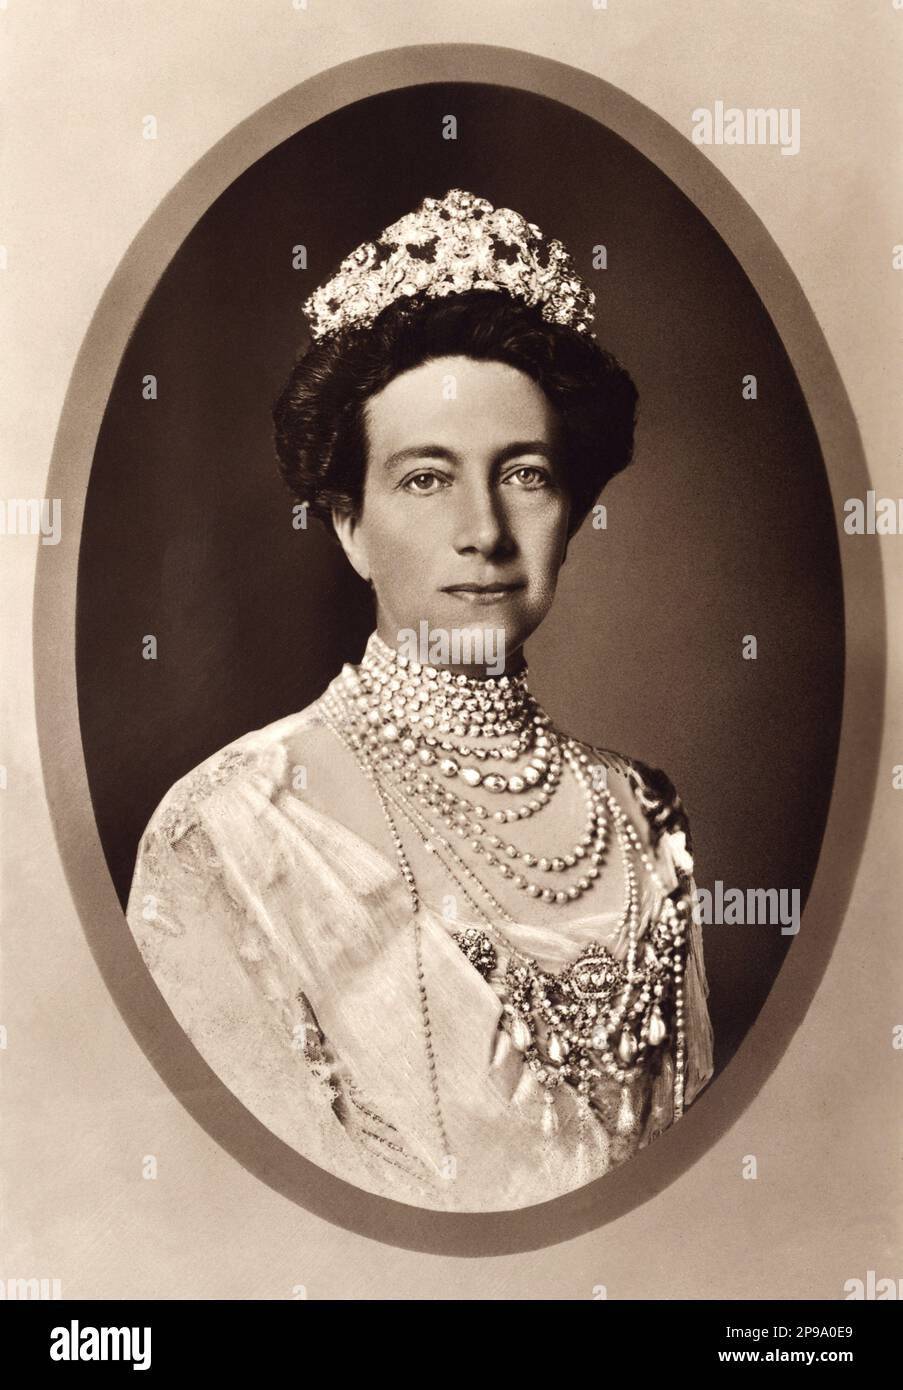 1914 : Regina VITTORIA di SVEZIA (1862-1930), principessa di BADEN , sposata con il re GUSTAF V di SVEZIA BERNADOTTE (1858-1950) . Suo padre era il Granduca Federico i di Baden (figlio della Principessa Sophie di Svezia) e la Principessa Louise di Prussia (figlia unica di Guglielmo i di Germania e Augusta di Saxe-Weimar) - REGINA - RE - NOBILTÀ - Nobiltà - REALI - ROYALTY - ritratto - ritrato - collana - collana - Casa DI BERNADOTTE - SVEZIA - NORVEGIA - royalty - nobili - nobiltà - FAMIGLIA REALE - FAMIGLIA - Gustaf - Gustavo - Gustav - Regina Vittoria di Svezia - chignon - collare - Foto Stock